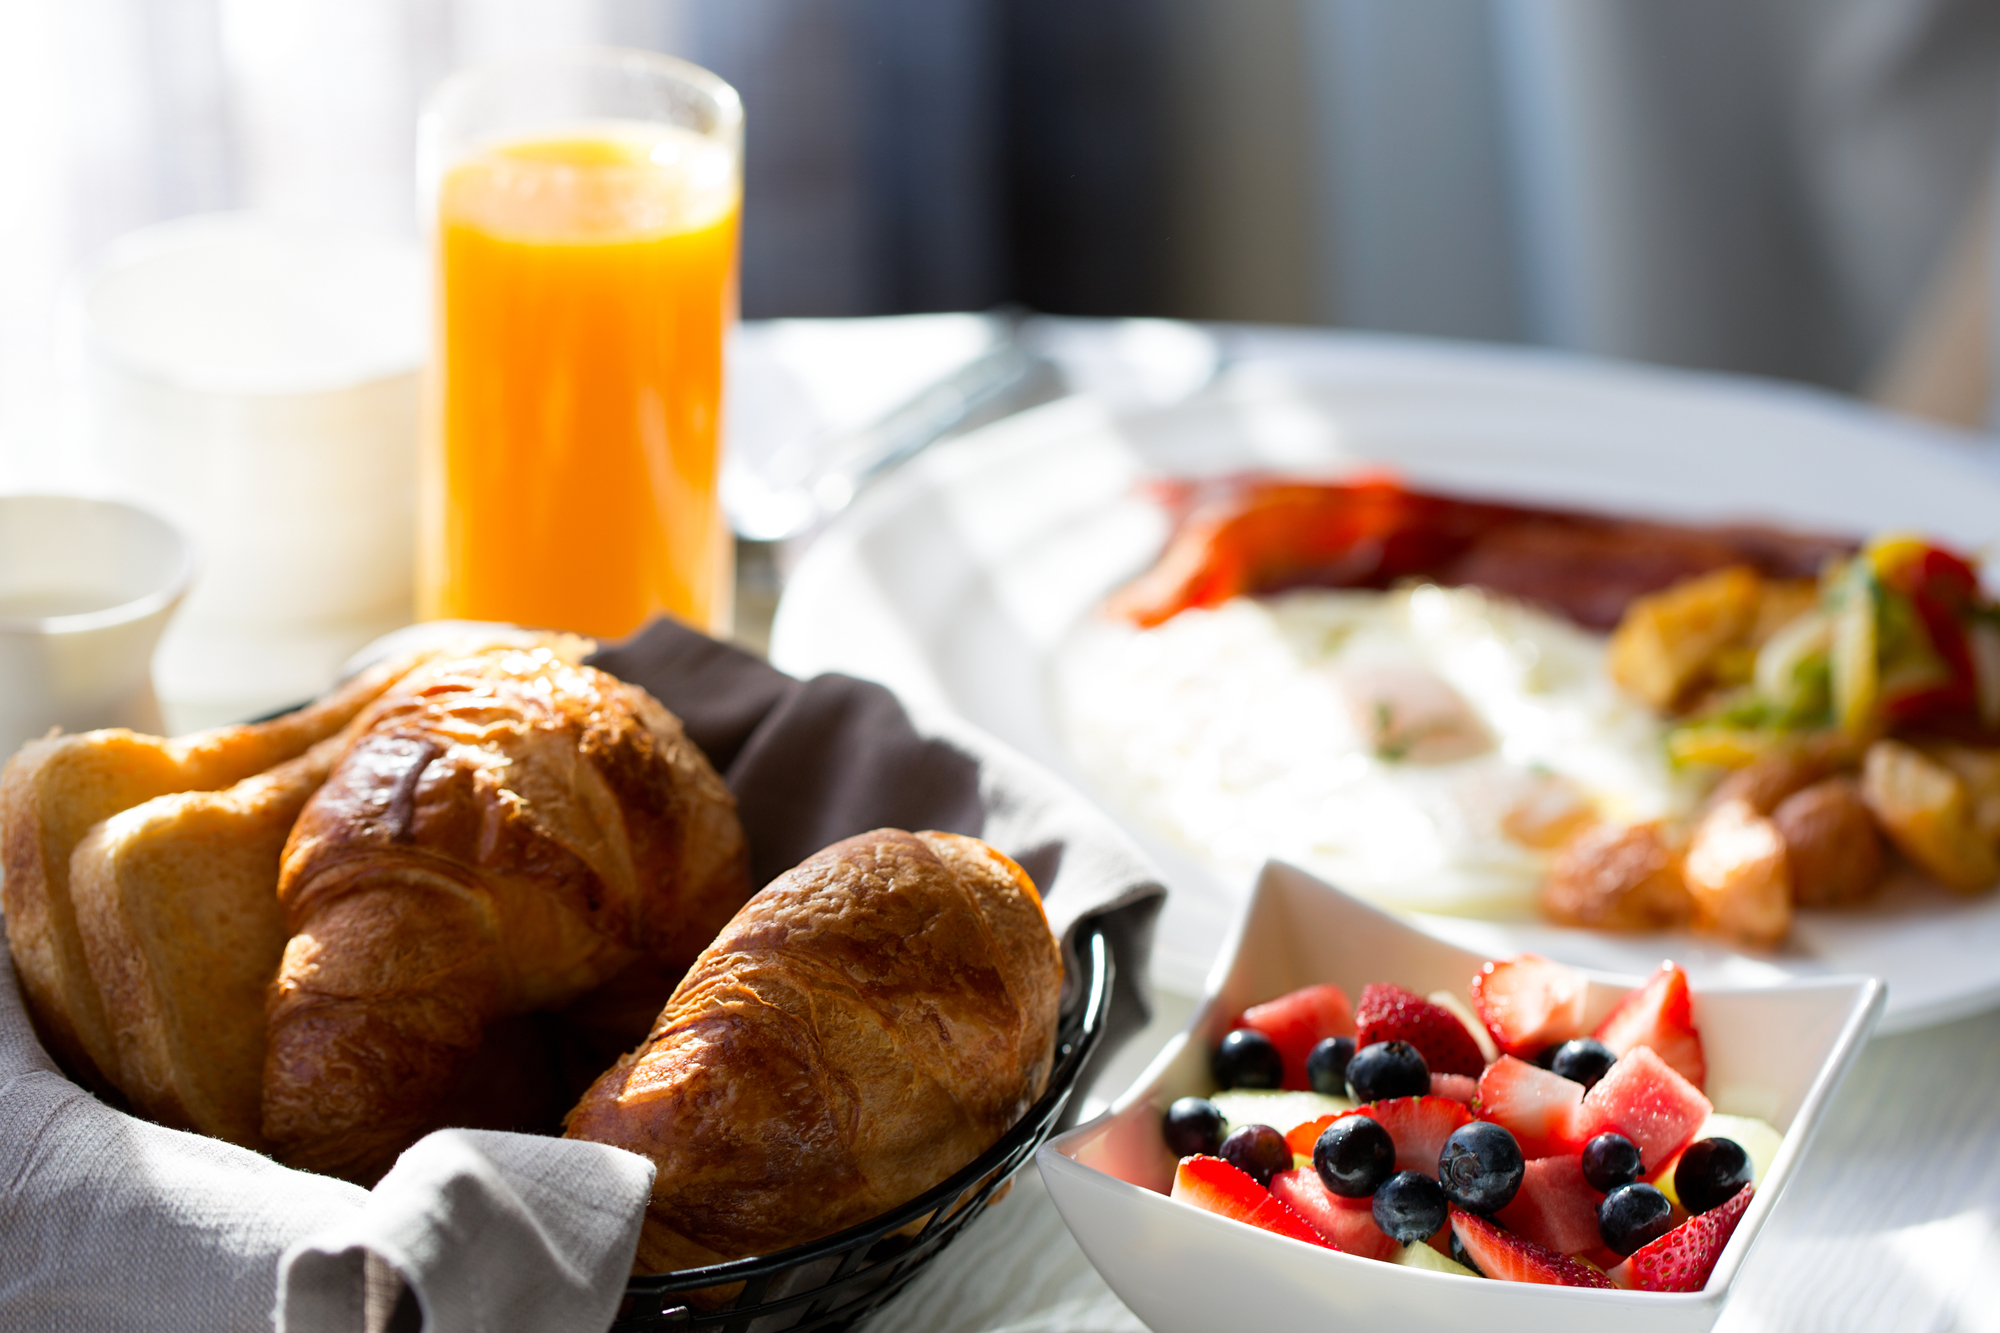 Image:ラブホテルの朝食サービスにはどんなものがある？